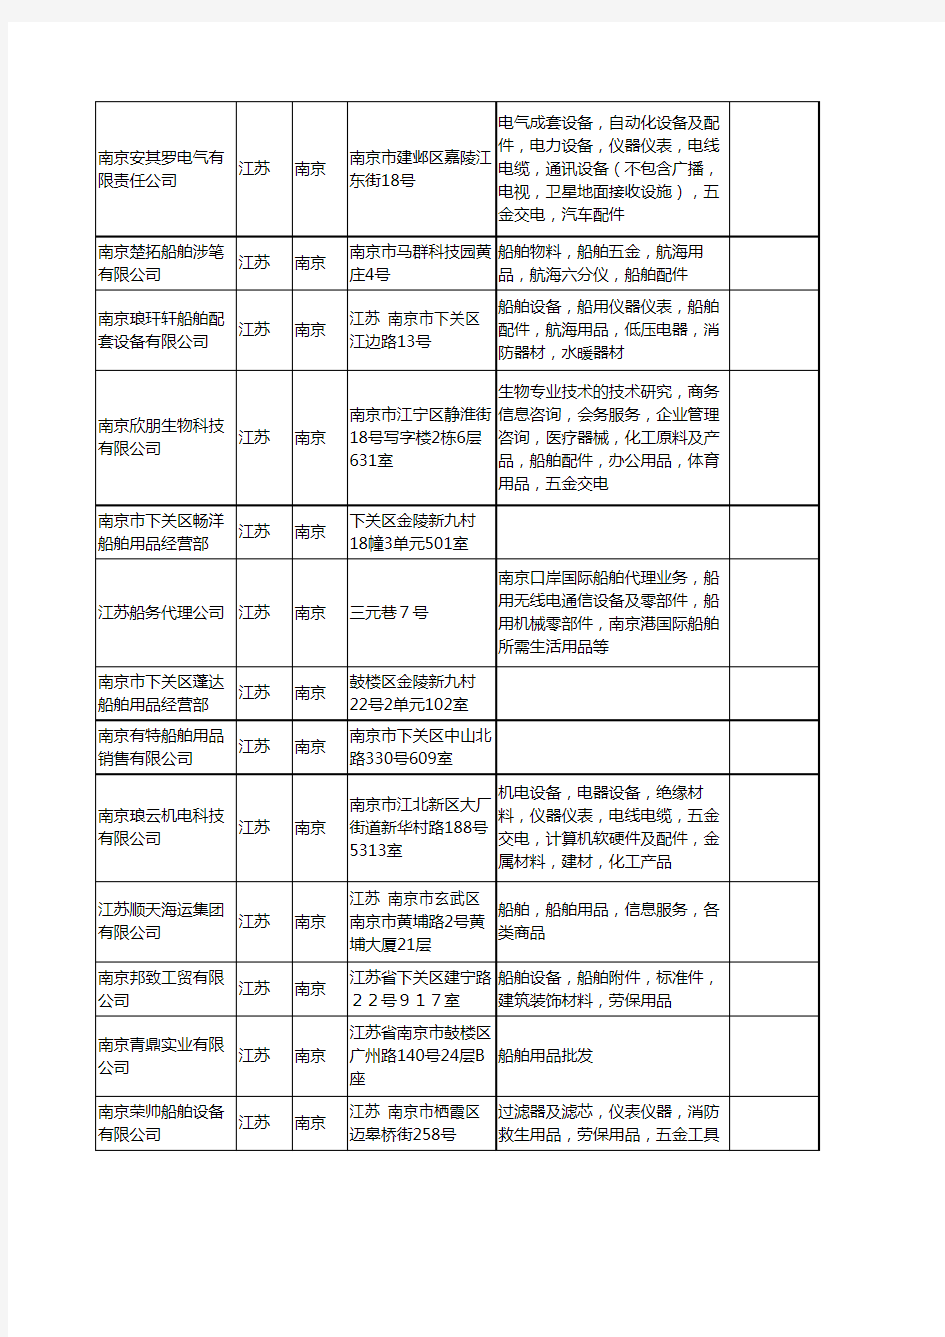 新版江苏省南京船舶用品工商企业公司商家名录名单联系方式大全37家